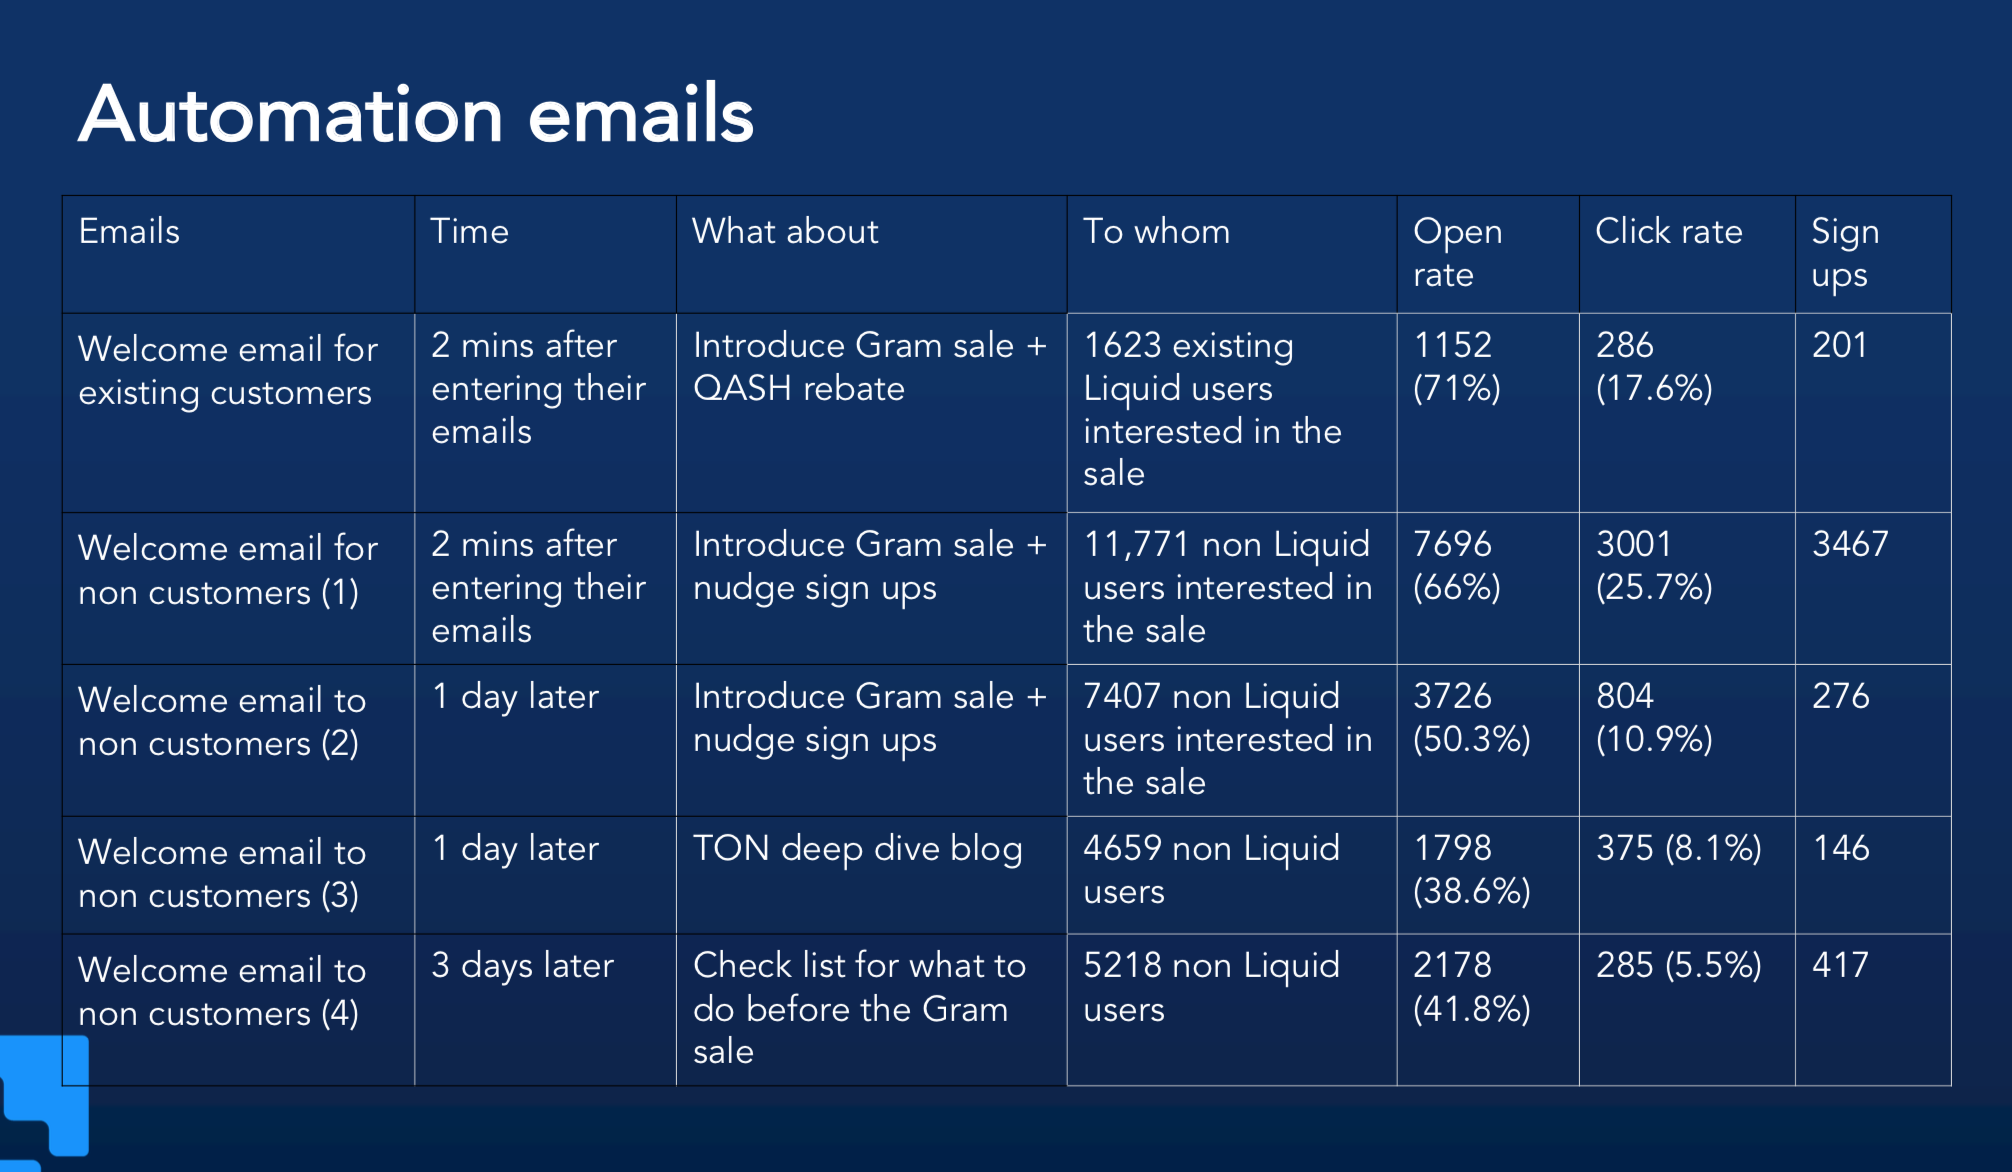 ตัวอย่างของ Automation emails ที่ Liquid นำเสนอประเด็นที่น่าสนใจต่างๆ พร้อมข้อมูล Performance